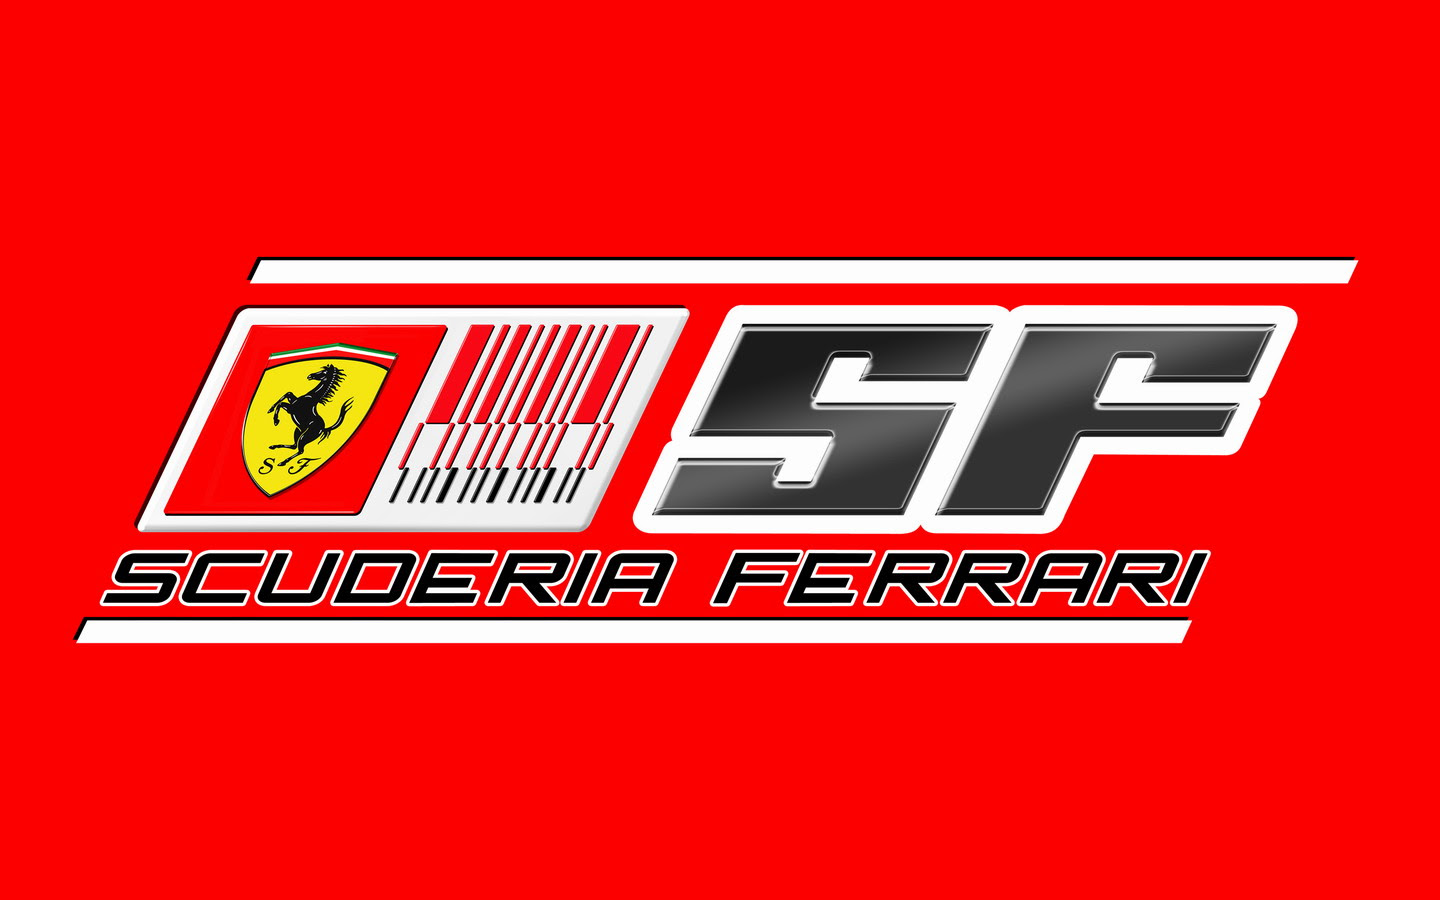 Scuderia Ferrari High Definition wallpaper vector and designs